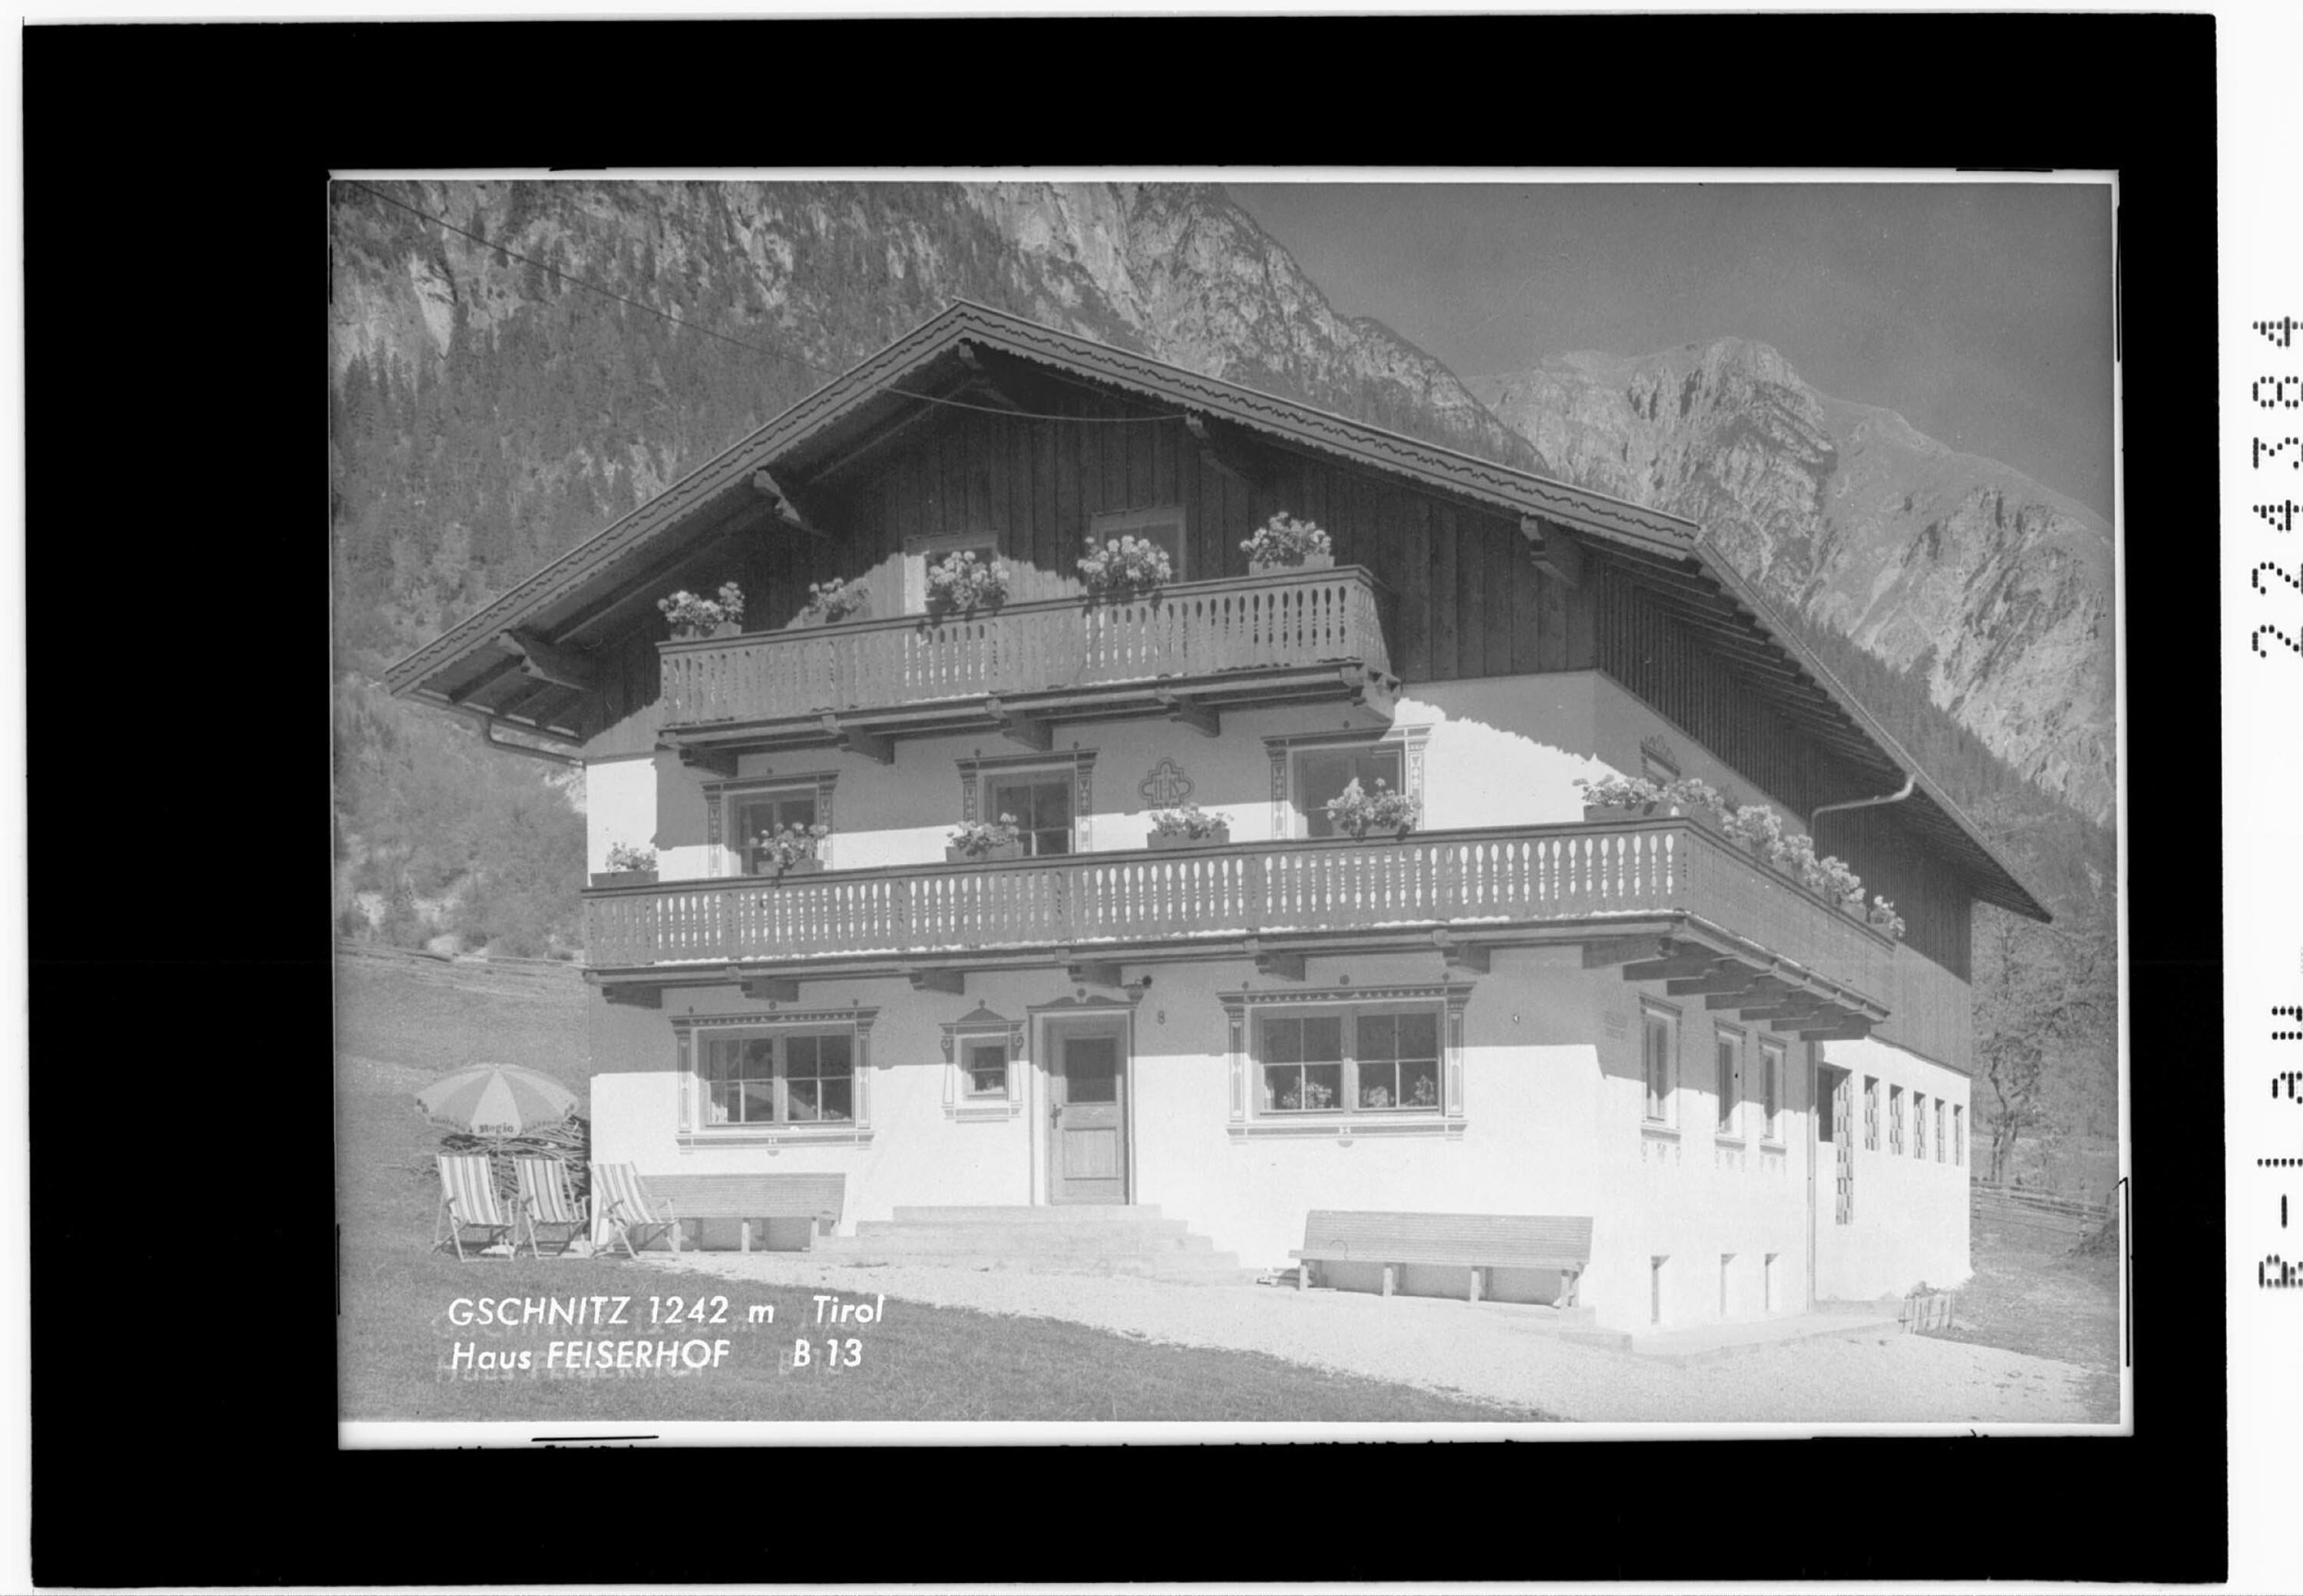 Gschnitz 1242 m Tirol / Haus Feiserhof></div>


    <hr>
    <div class=